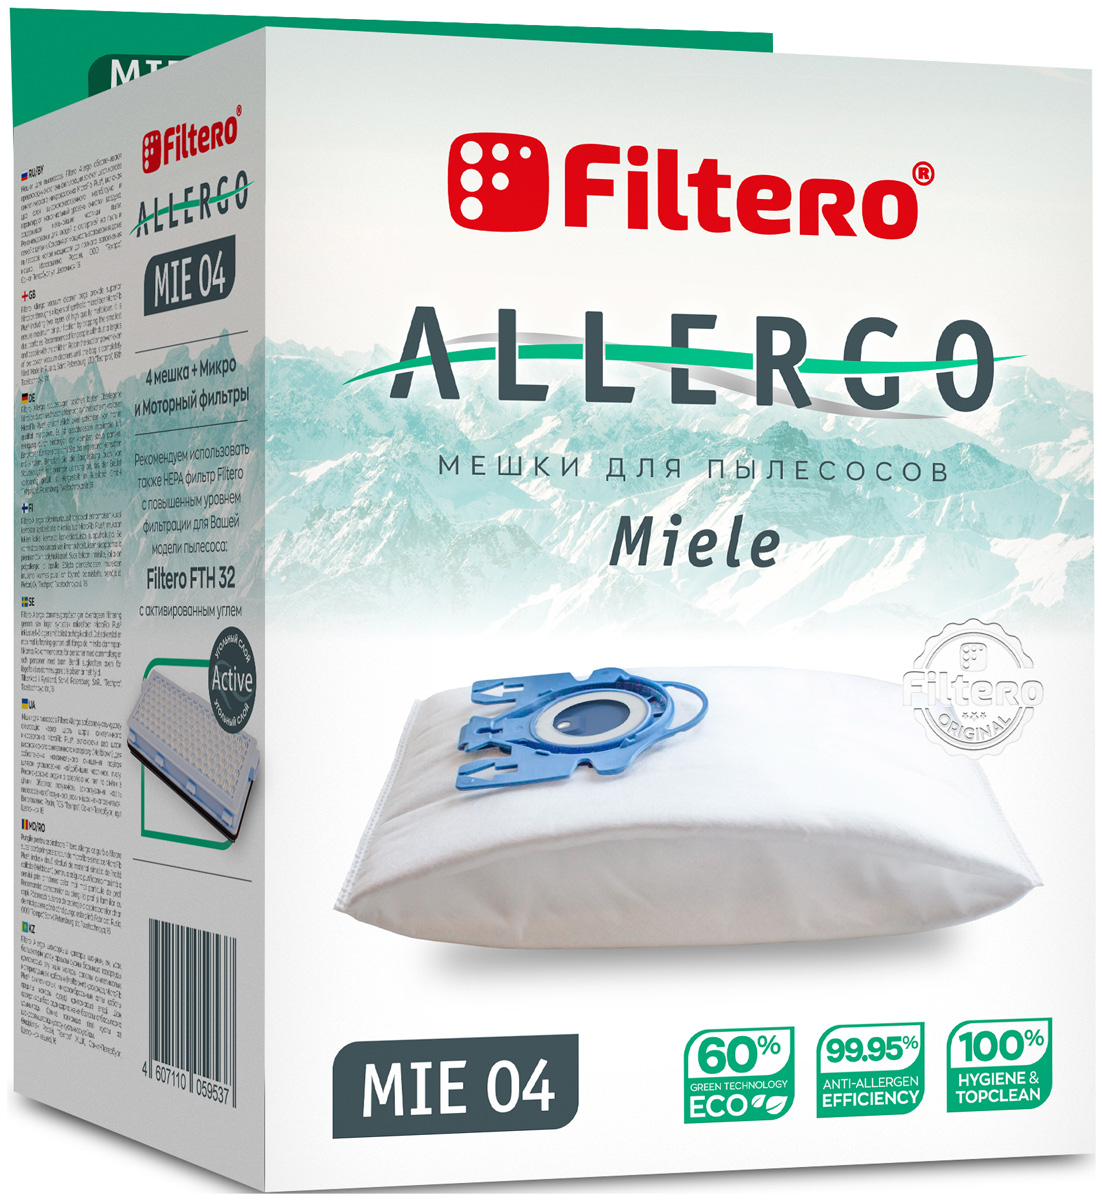 Пылесборники Filtero MIE 04 Allergo 4шт. + моторный фильтр и микрофильтр